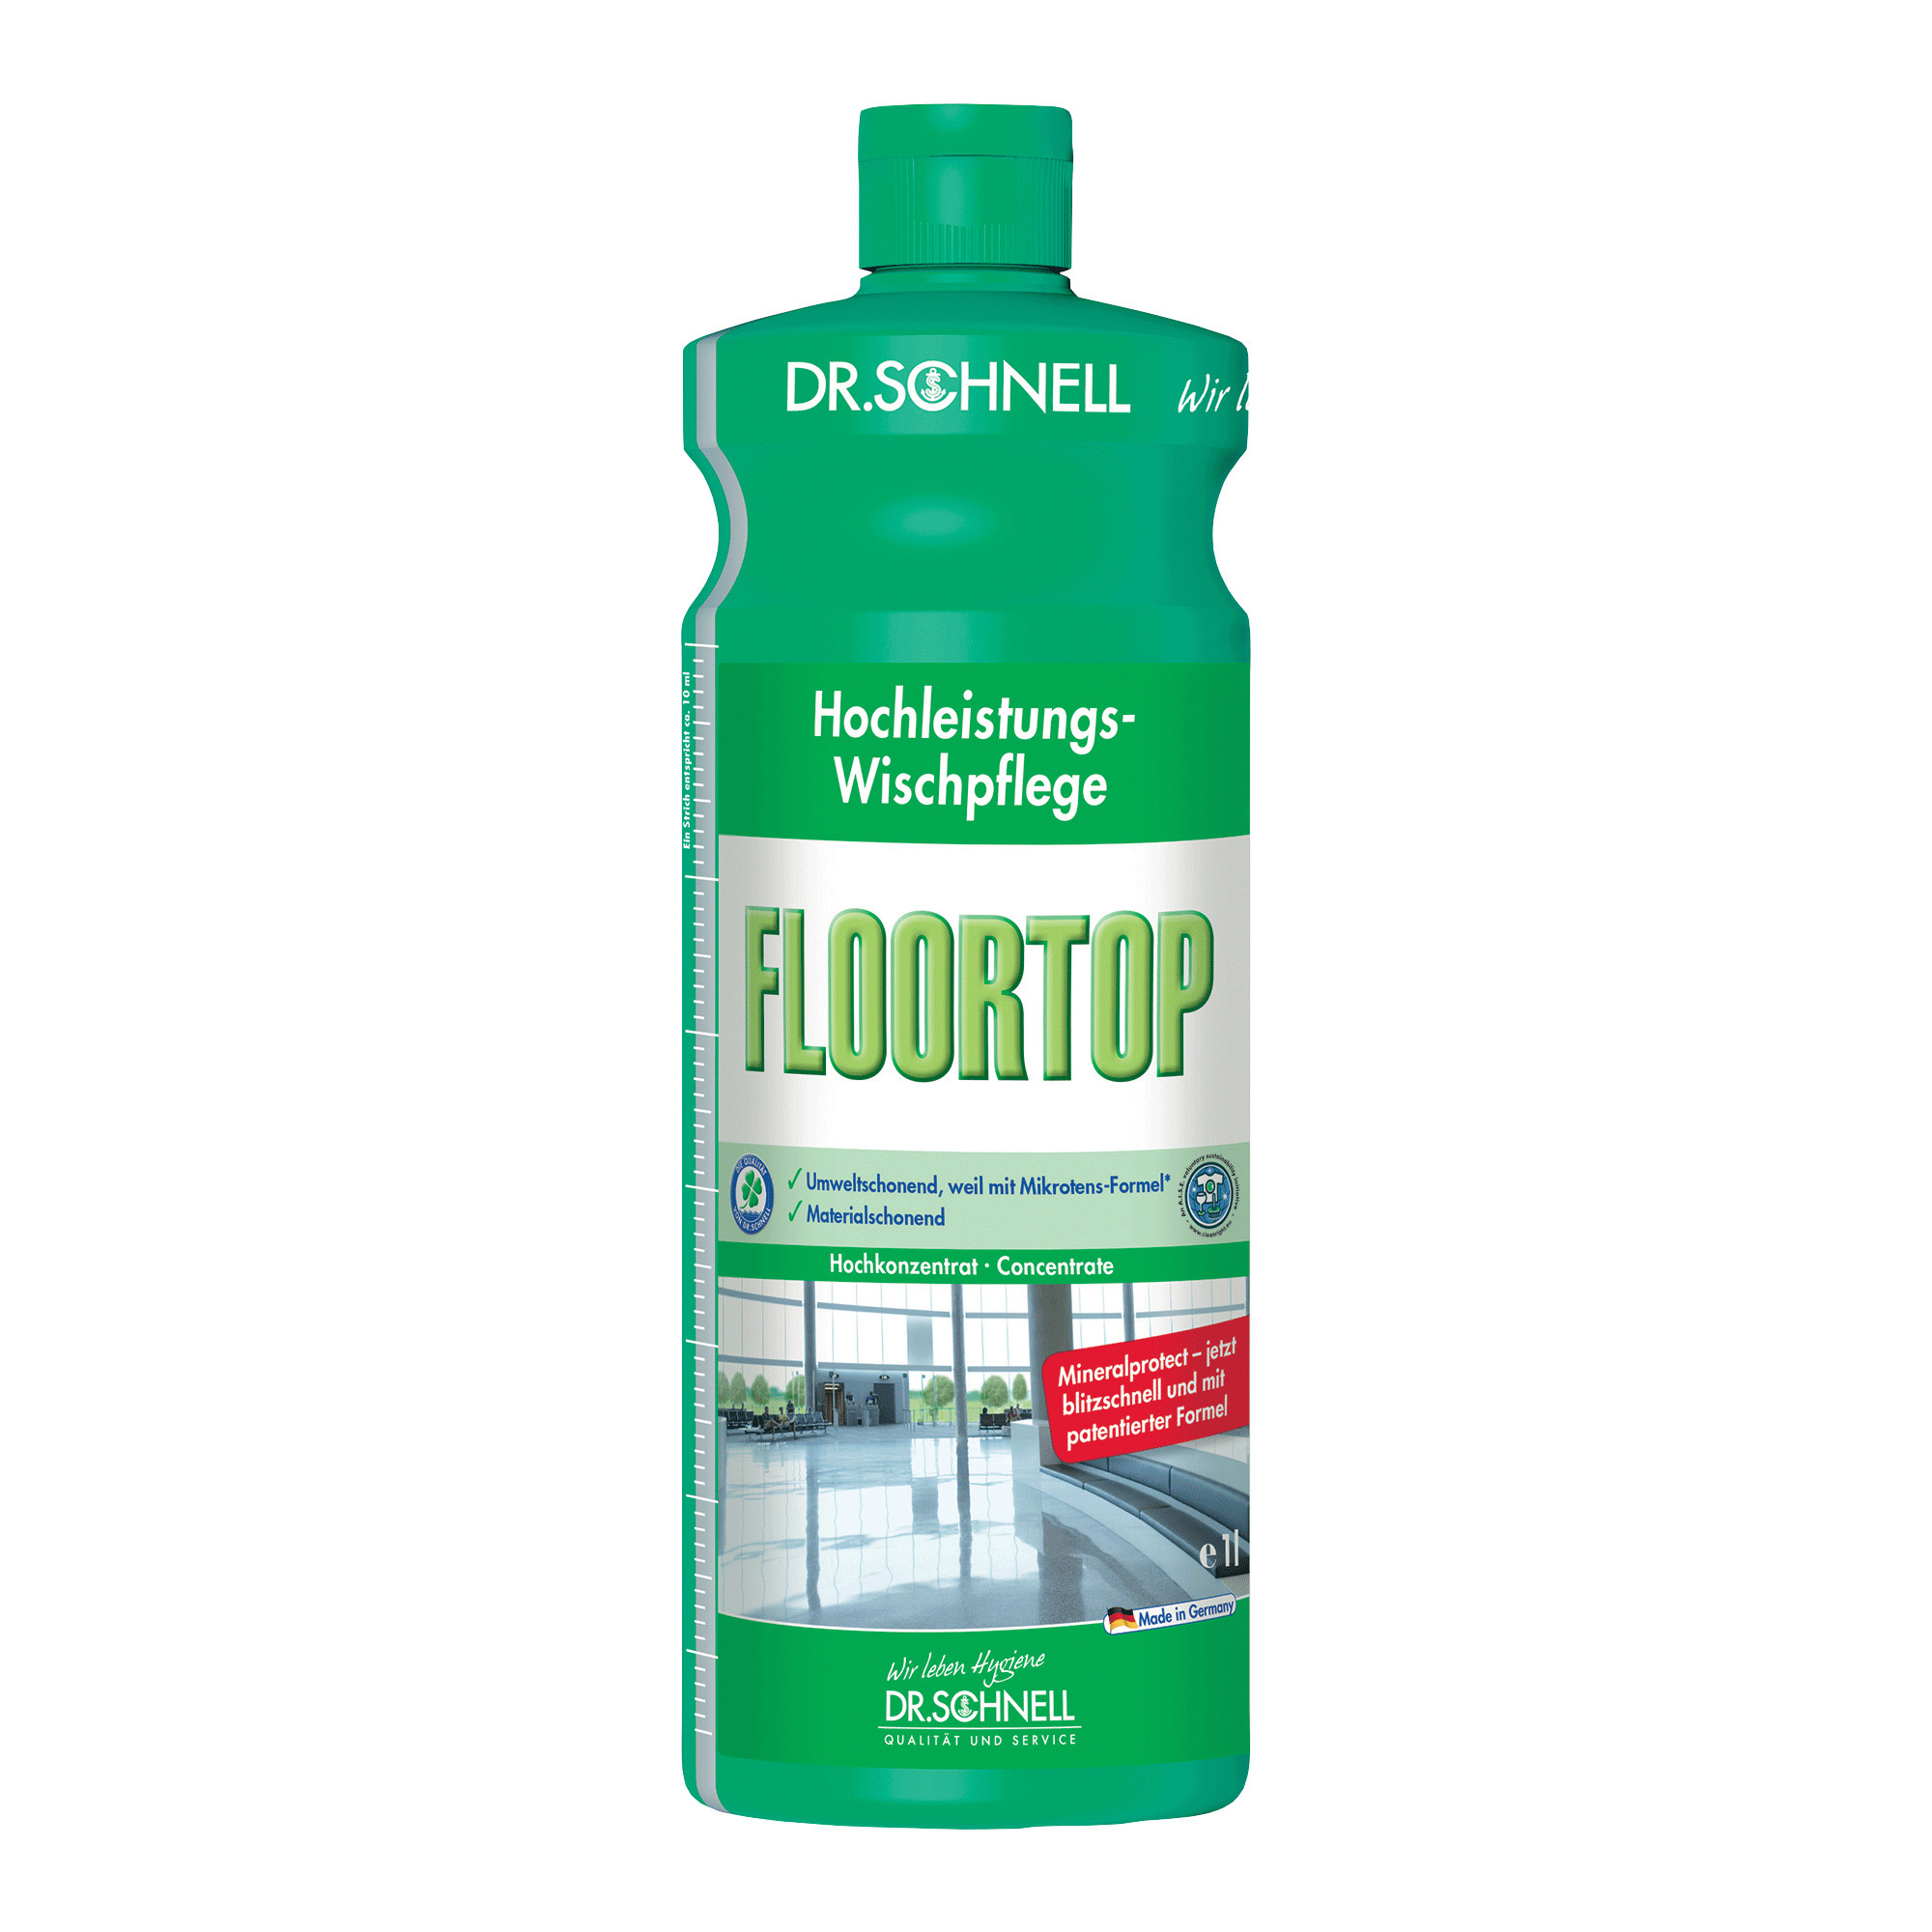 Dr. Schnell Floortop Hochleistungs-Wischpflege 1 Liter Flasche 00157_1